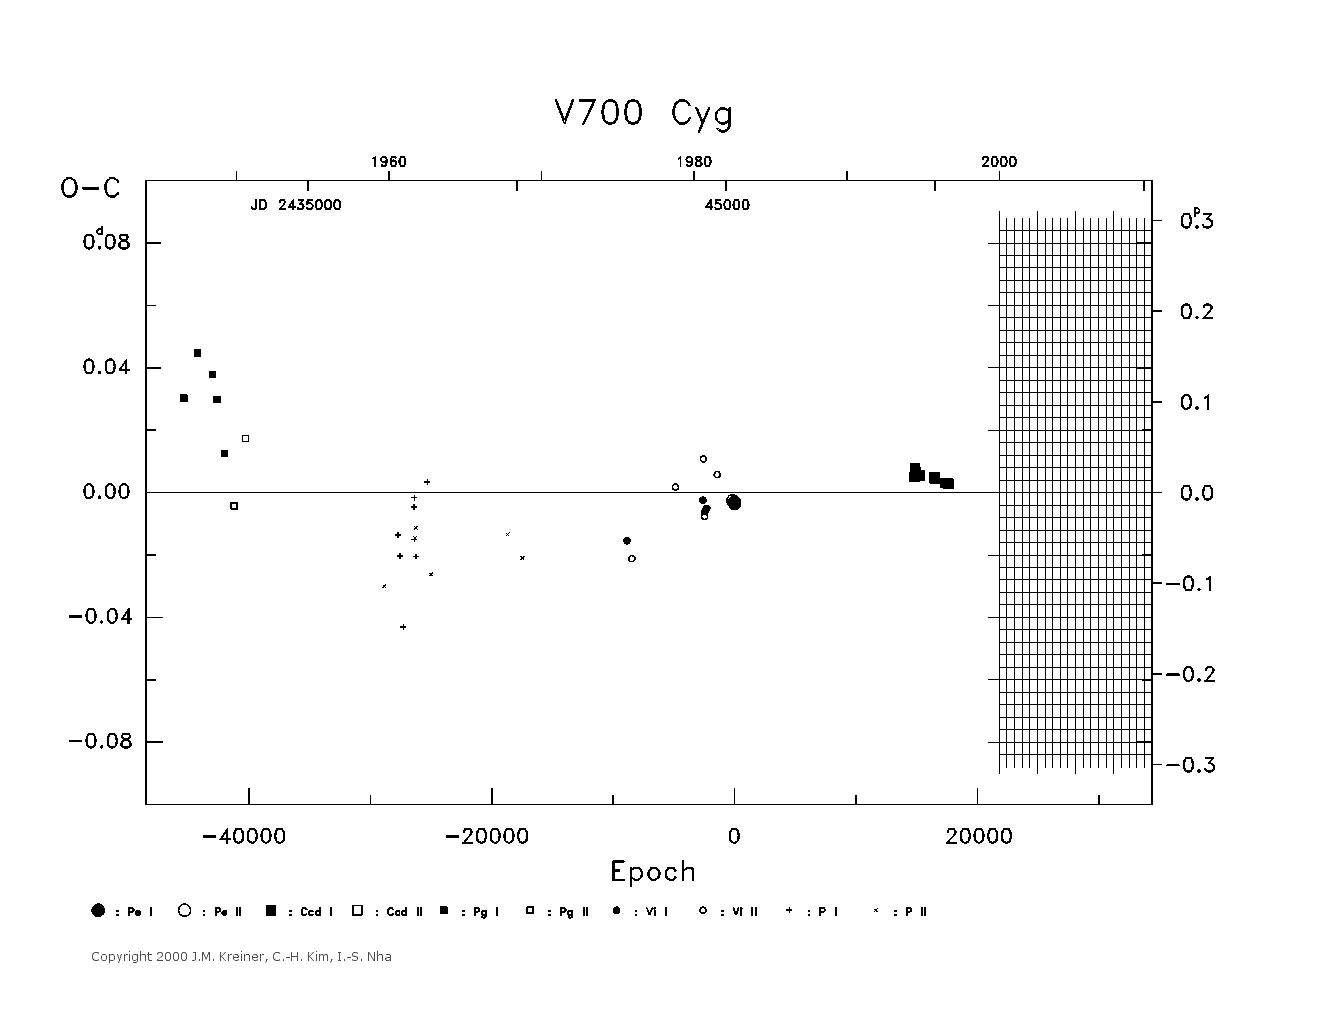 [IMAGE: large V700 CYG O-C diagram]